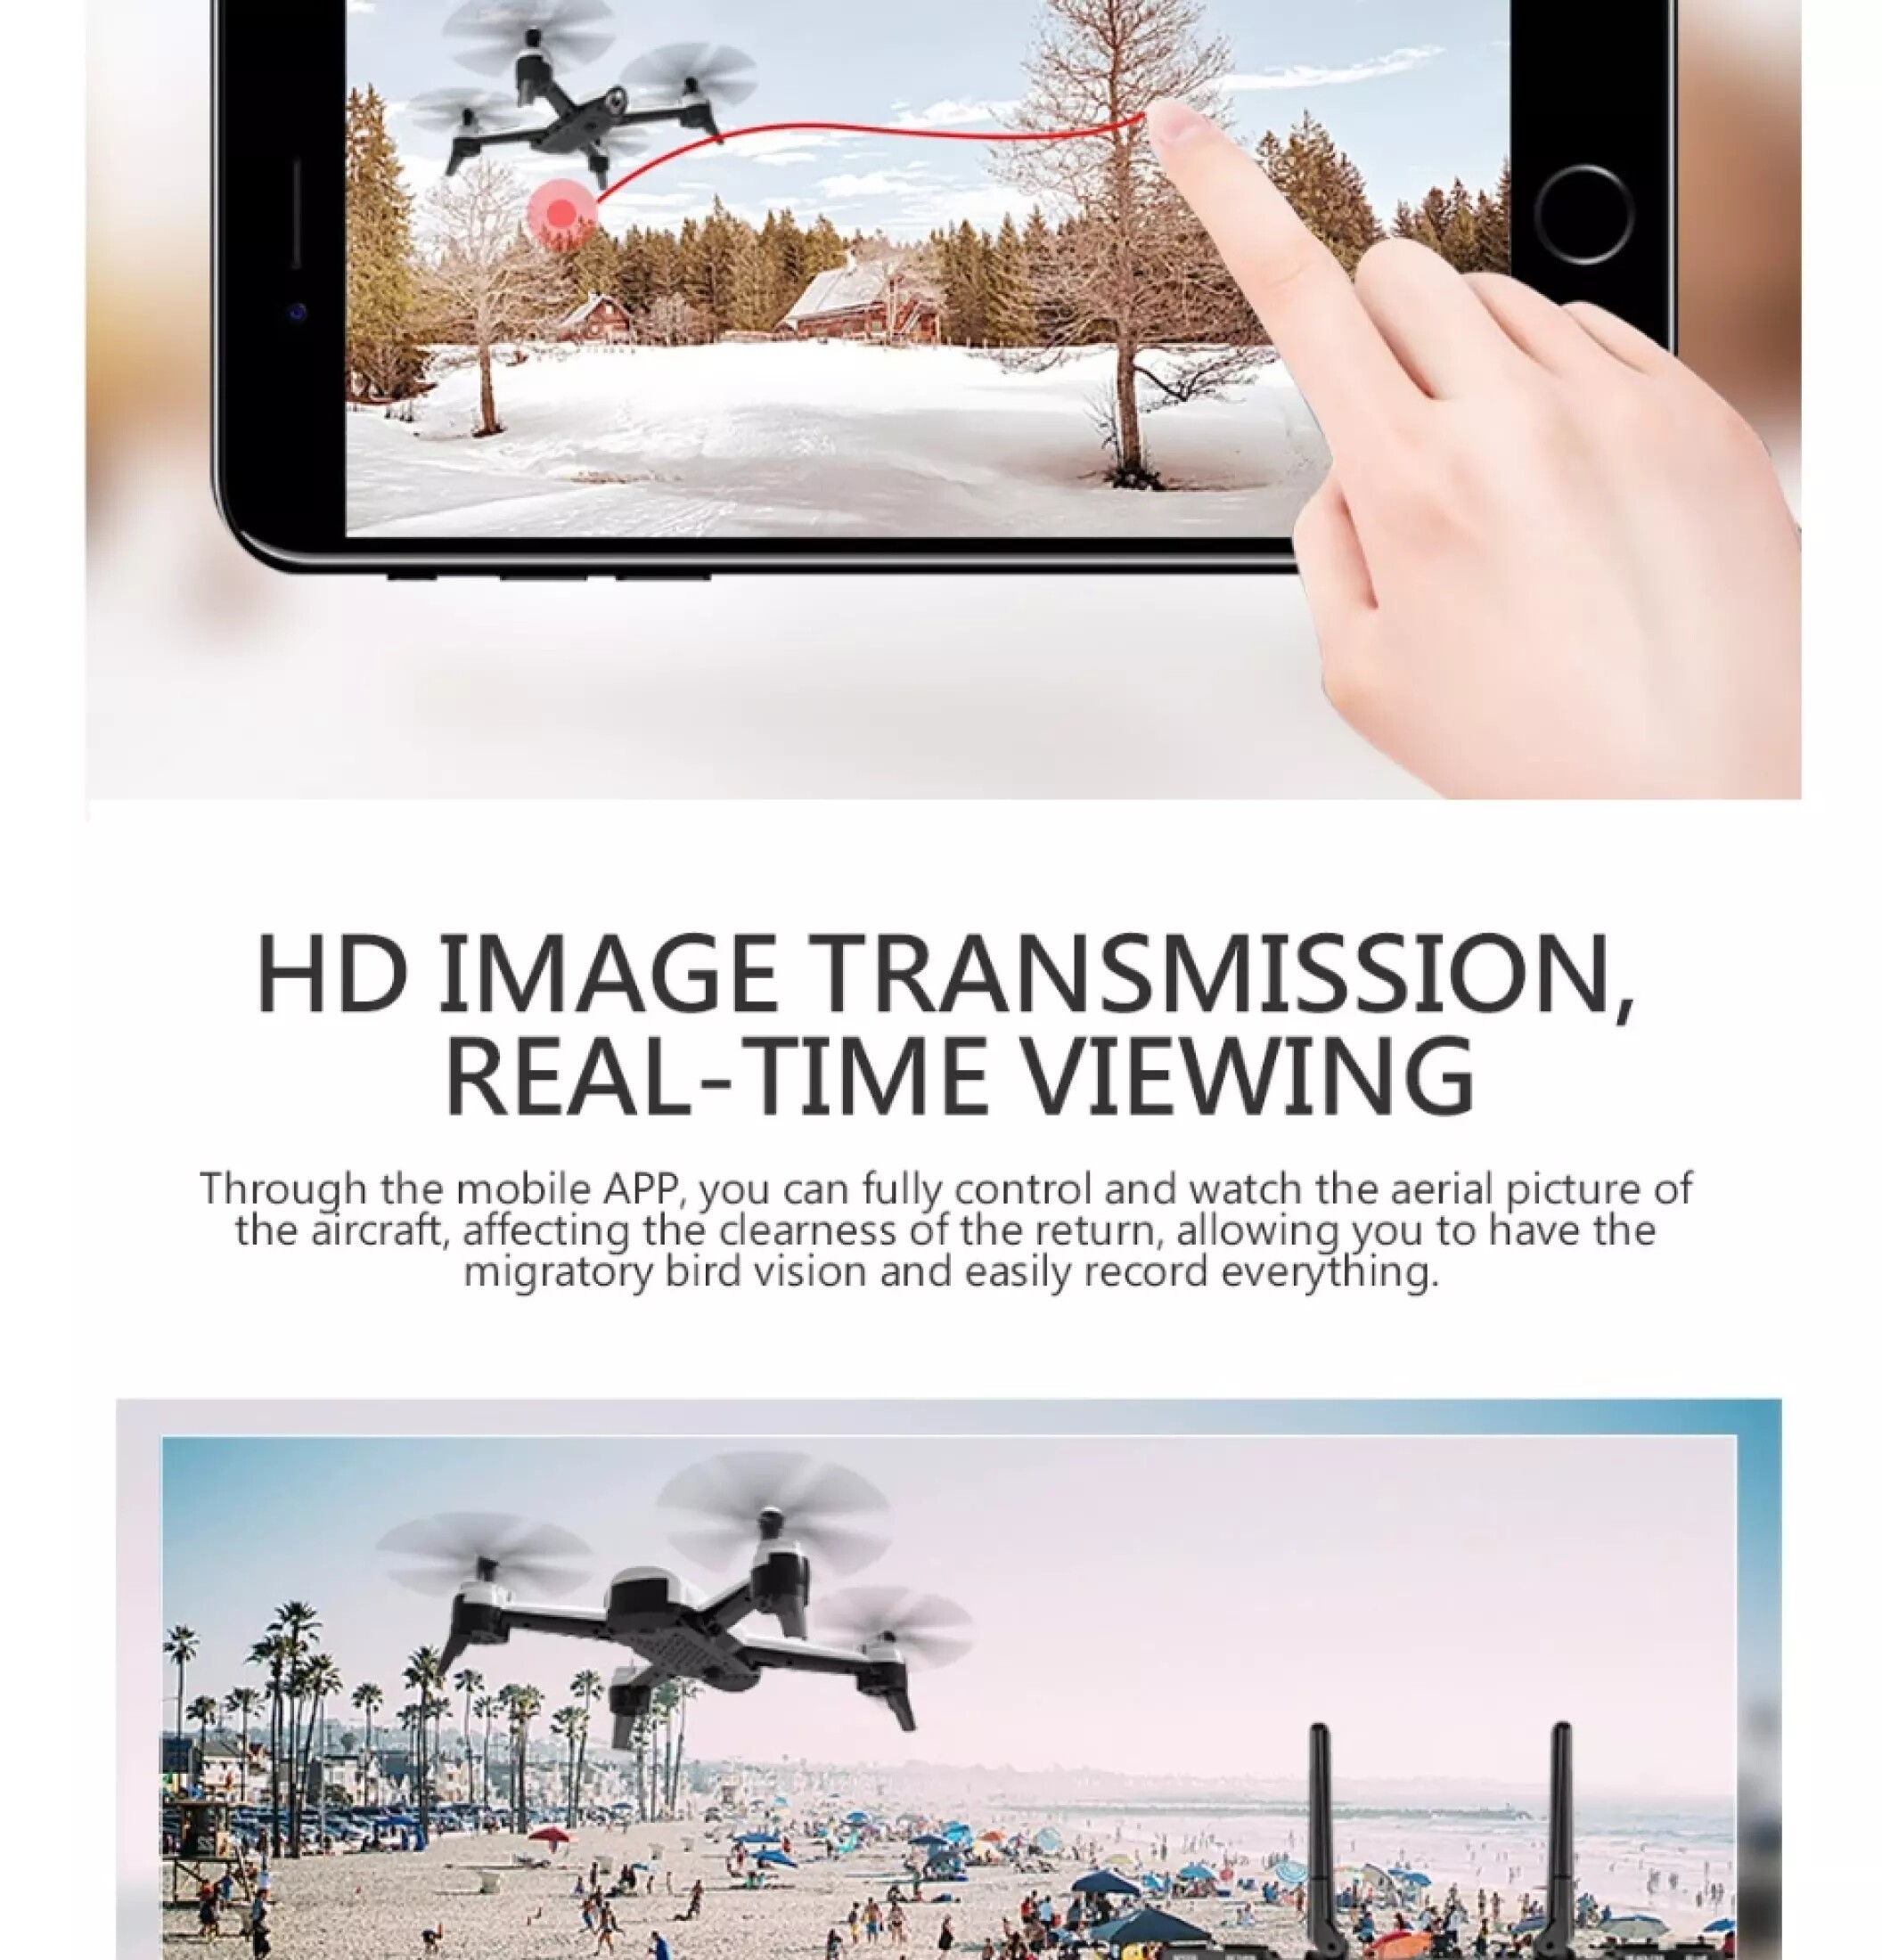 มุมมองเพิ่มเติมของสินค้า Drone & Battery【Blackshark-106 】4k HDร้อมกล้องสองตัว WiFi FPV แบบเรียลไทม์วิดีโอทางอากาศมุมกว้างรีโมทคอนโทรลเฮลิคอปเตอร์สี่แกนของเล่น นรองรับระบบIOS Androidรีโม